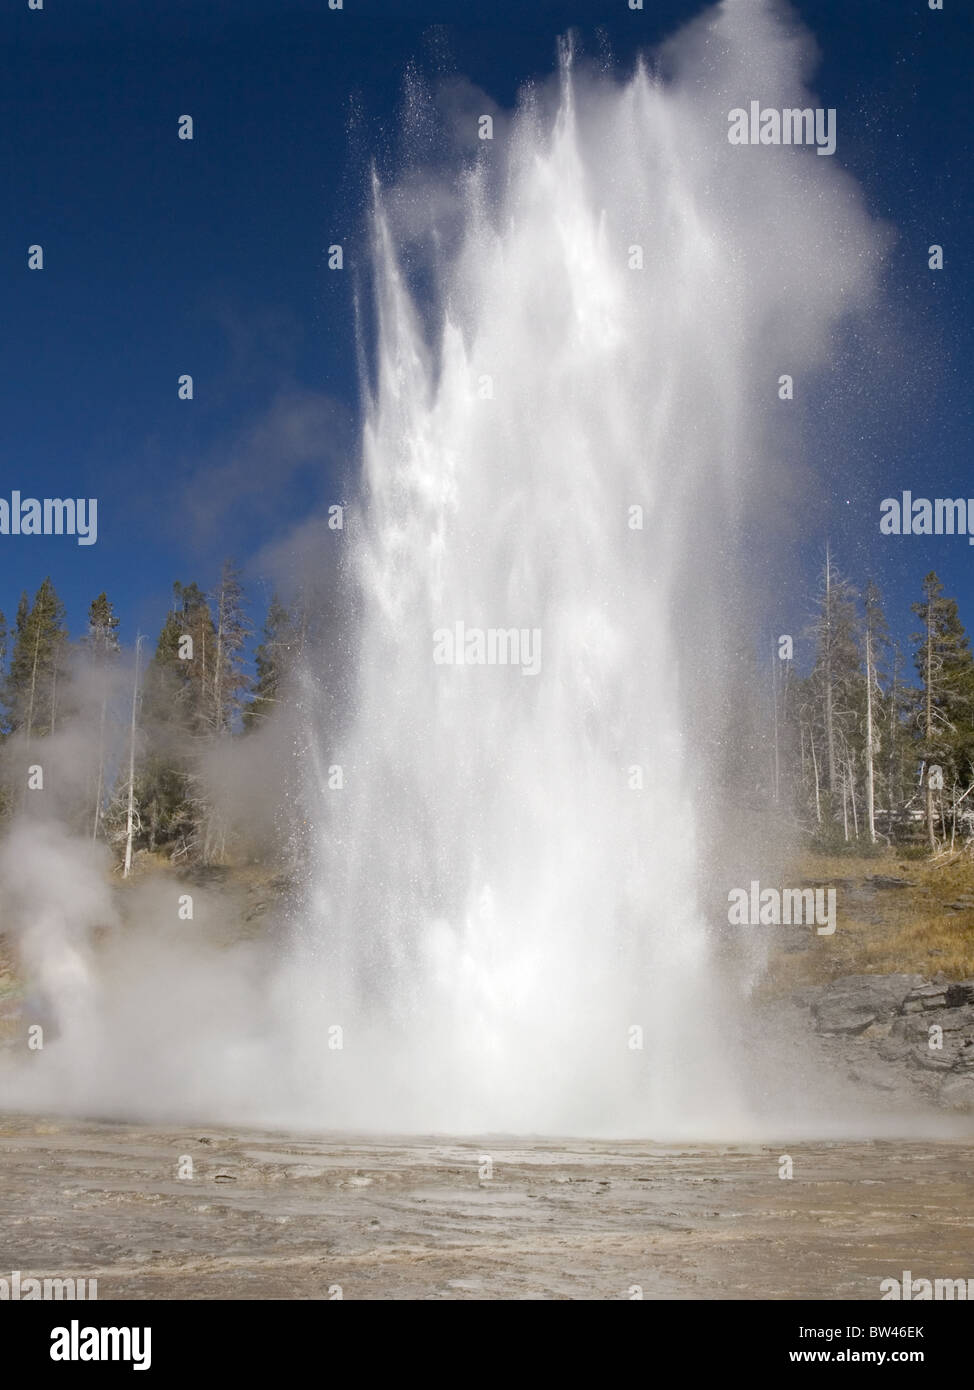 Grand Geyser Yellowstone erupting Stock Photo